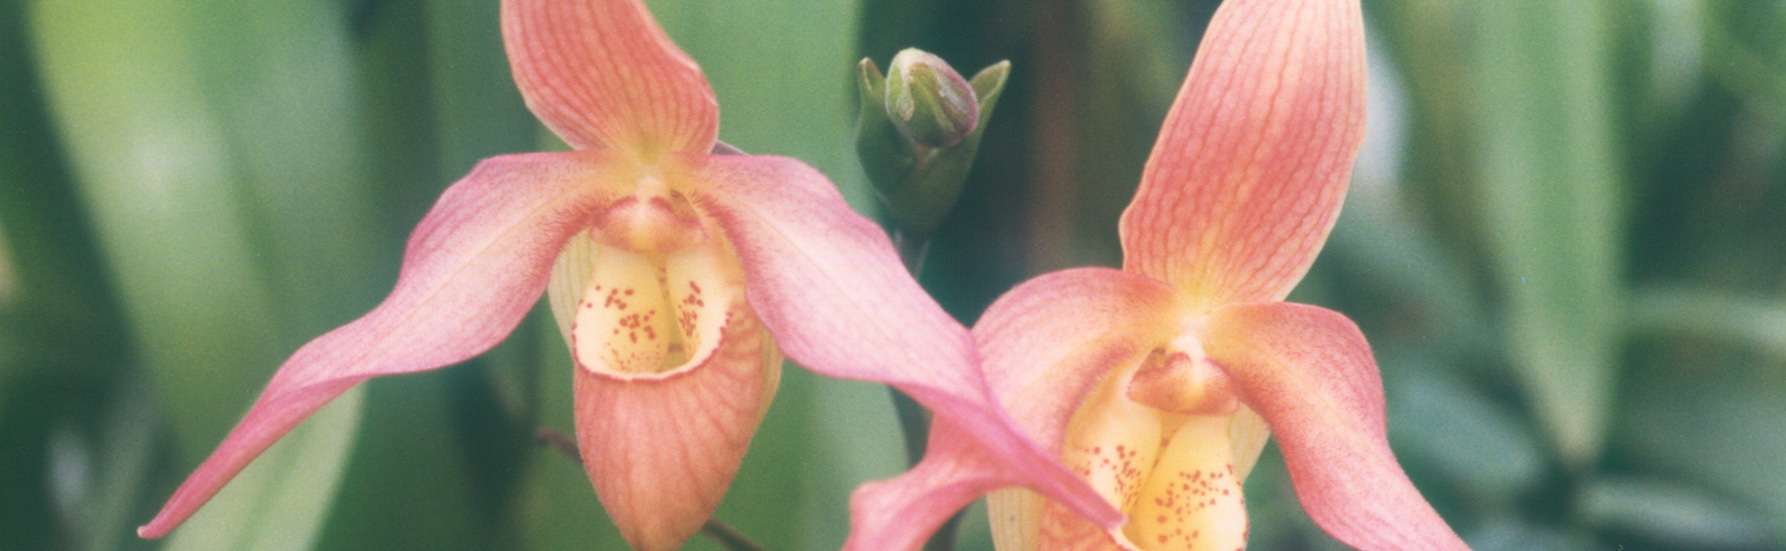 Rare Phragmipedium besseae orchid plant  FS not in bloom